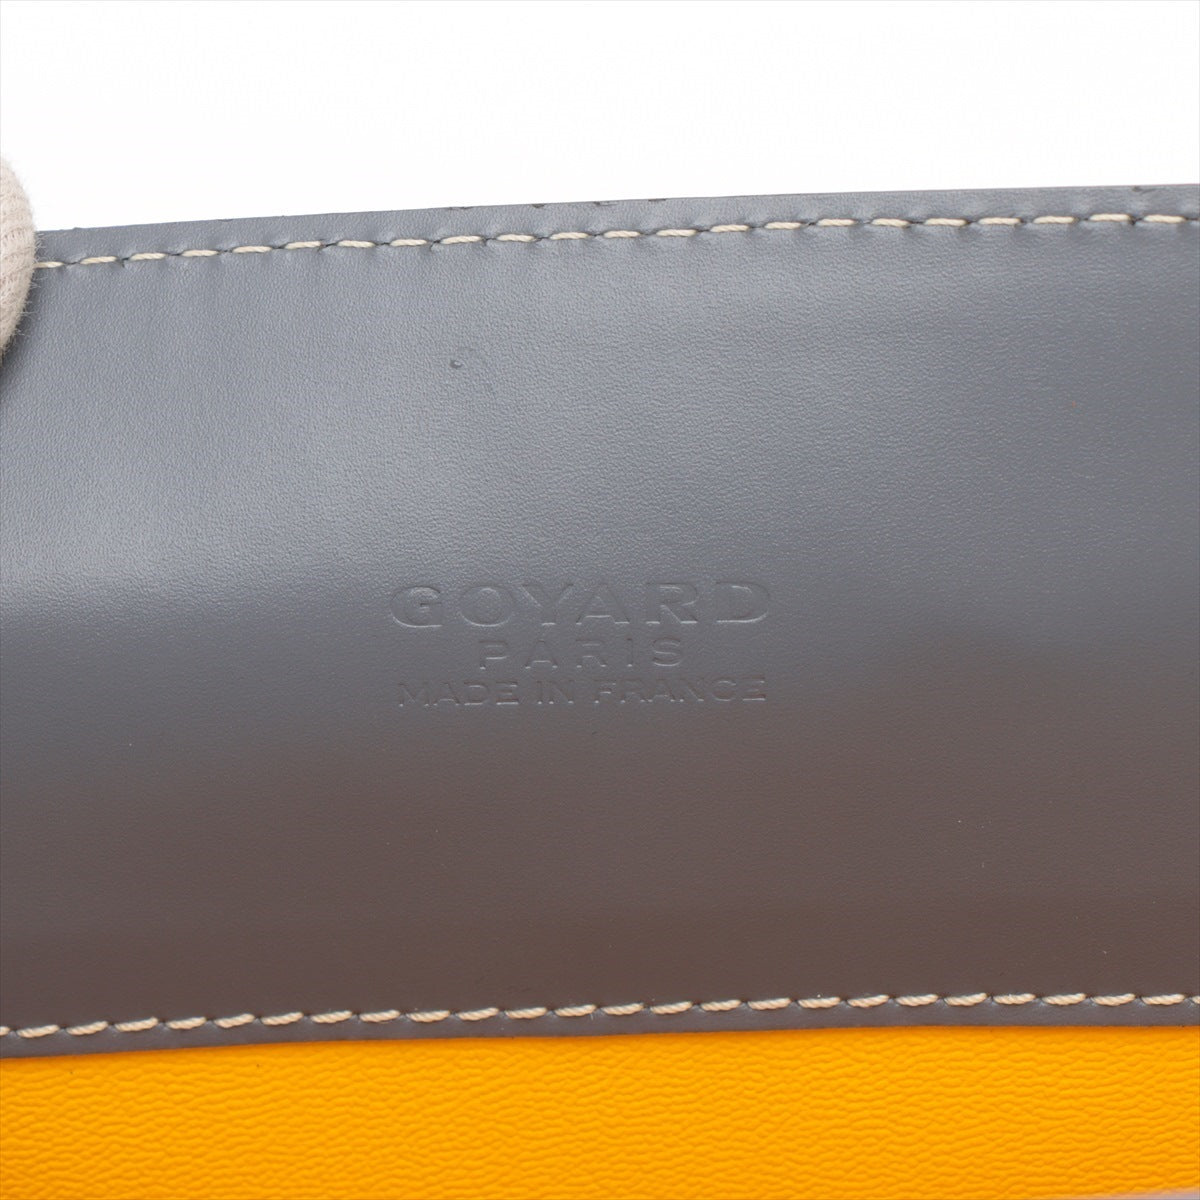 Goyar Single PVC Leather Briefcase Grey